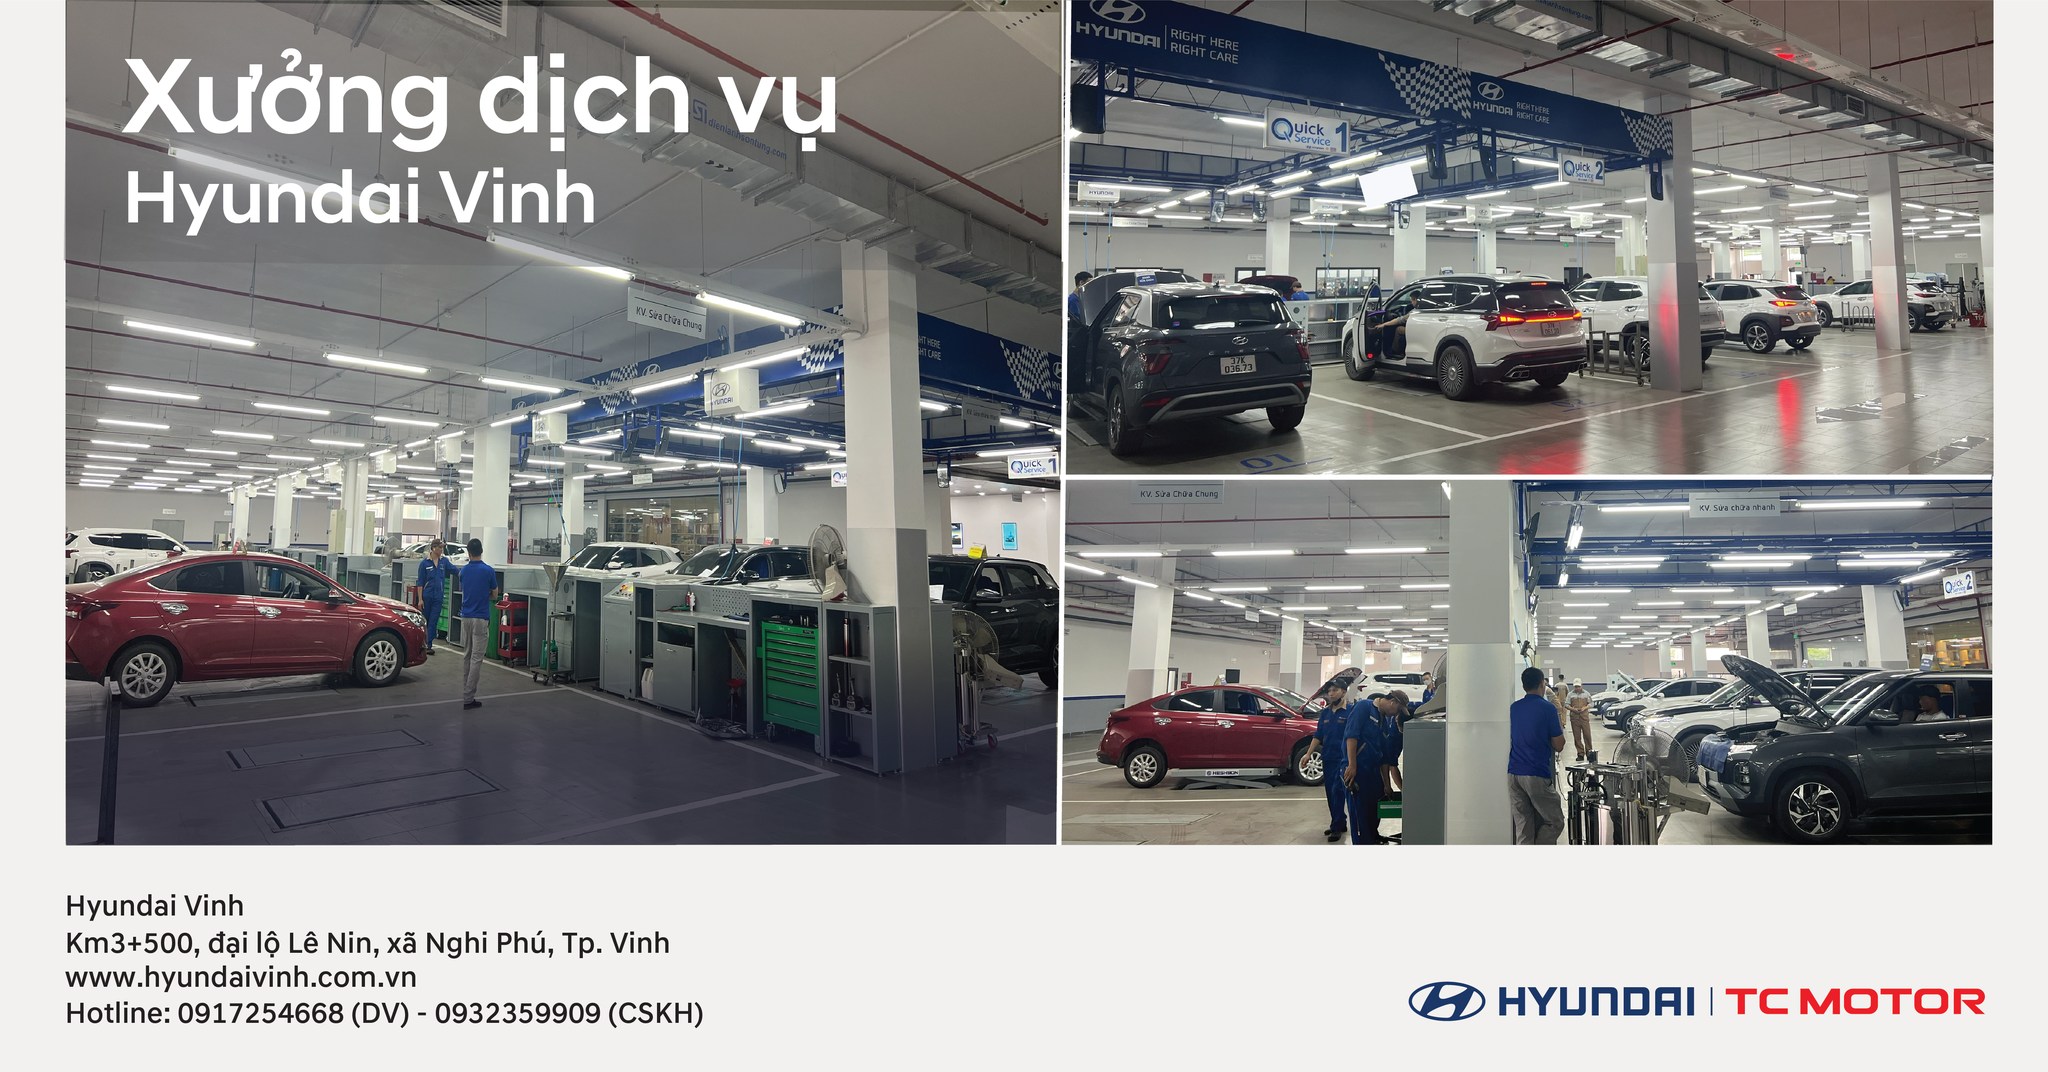 Xưởng dịch vụ mới - Hyundai Vinh